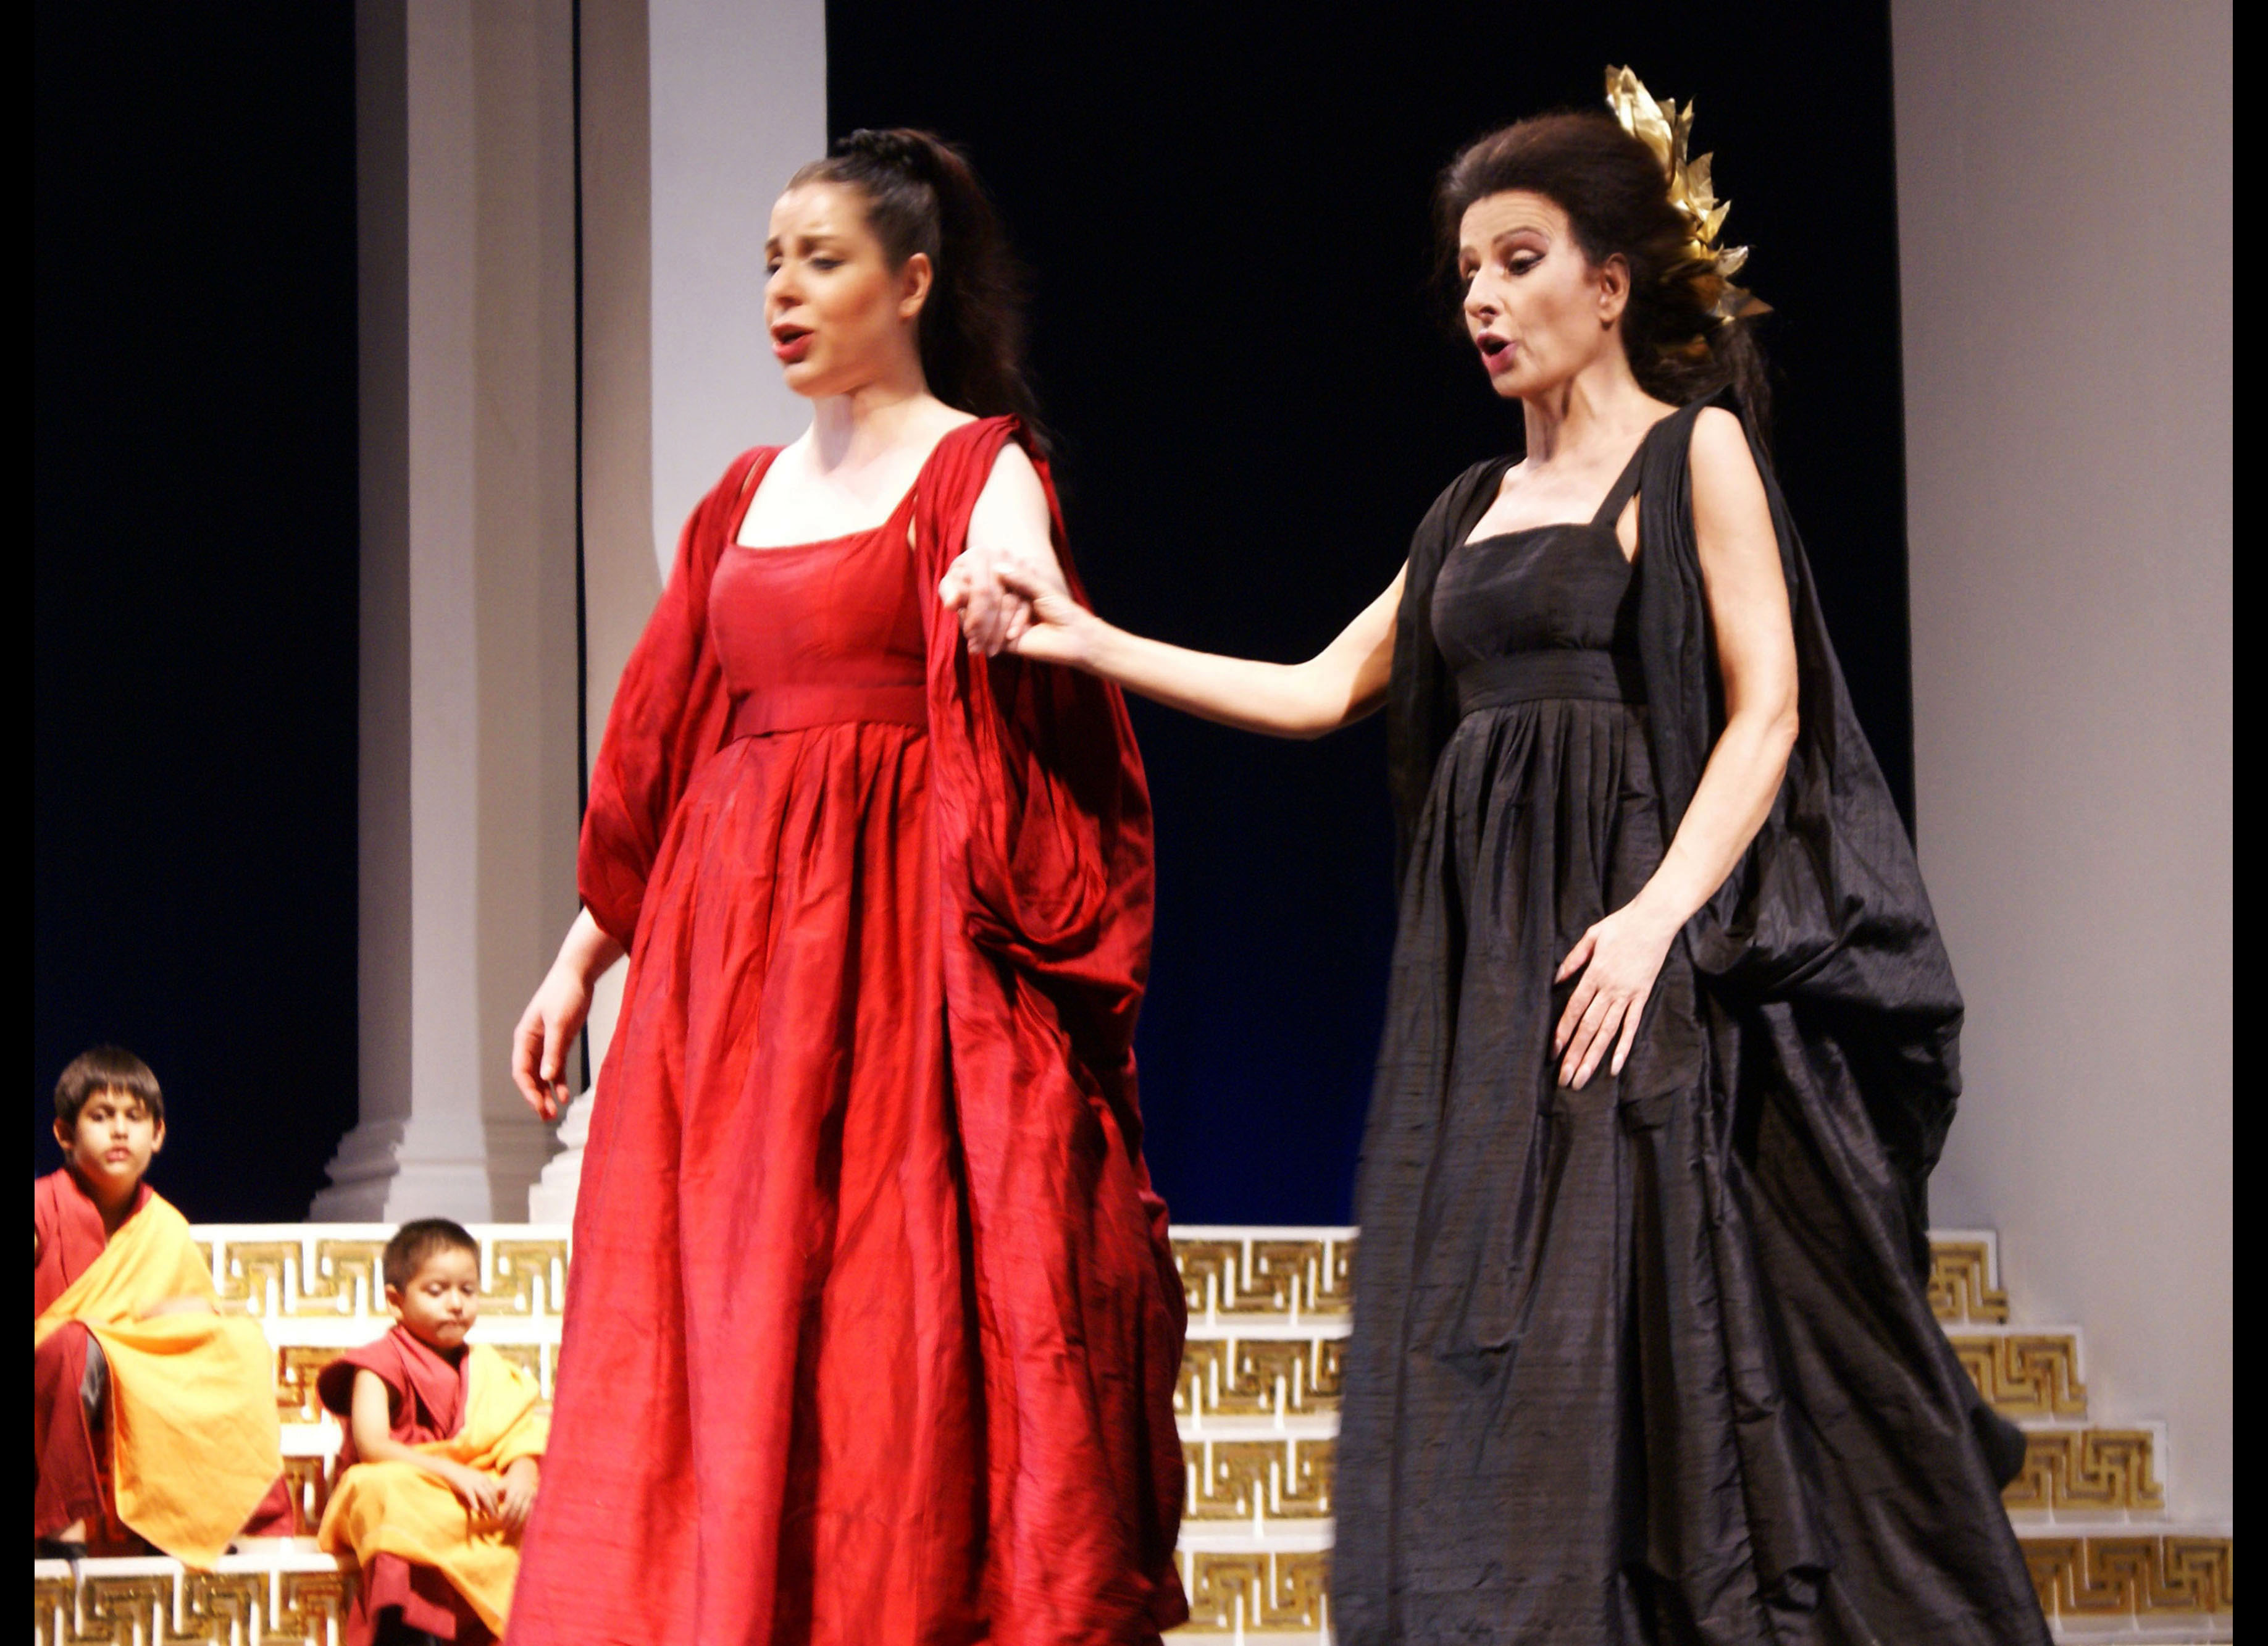 Lucia Aliberti with the mezzosoprano Daniela Barcellona⚘Gran Teatro Nacional⚘Festival Alejandro Granda⚘Lima⚘Opera⚘"Norma”⚘On Stage⚘Photo taken from the DVD⚘:http://www.luciaaliberti.it #luciaaliberti #danielabarcellona #granteatronacional #lima #festivalalejandrogranda #norma #opera #onstage #dvdrecording